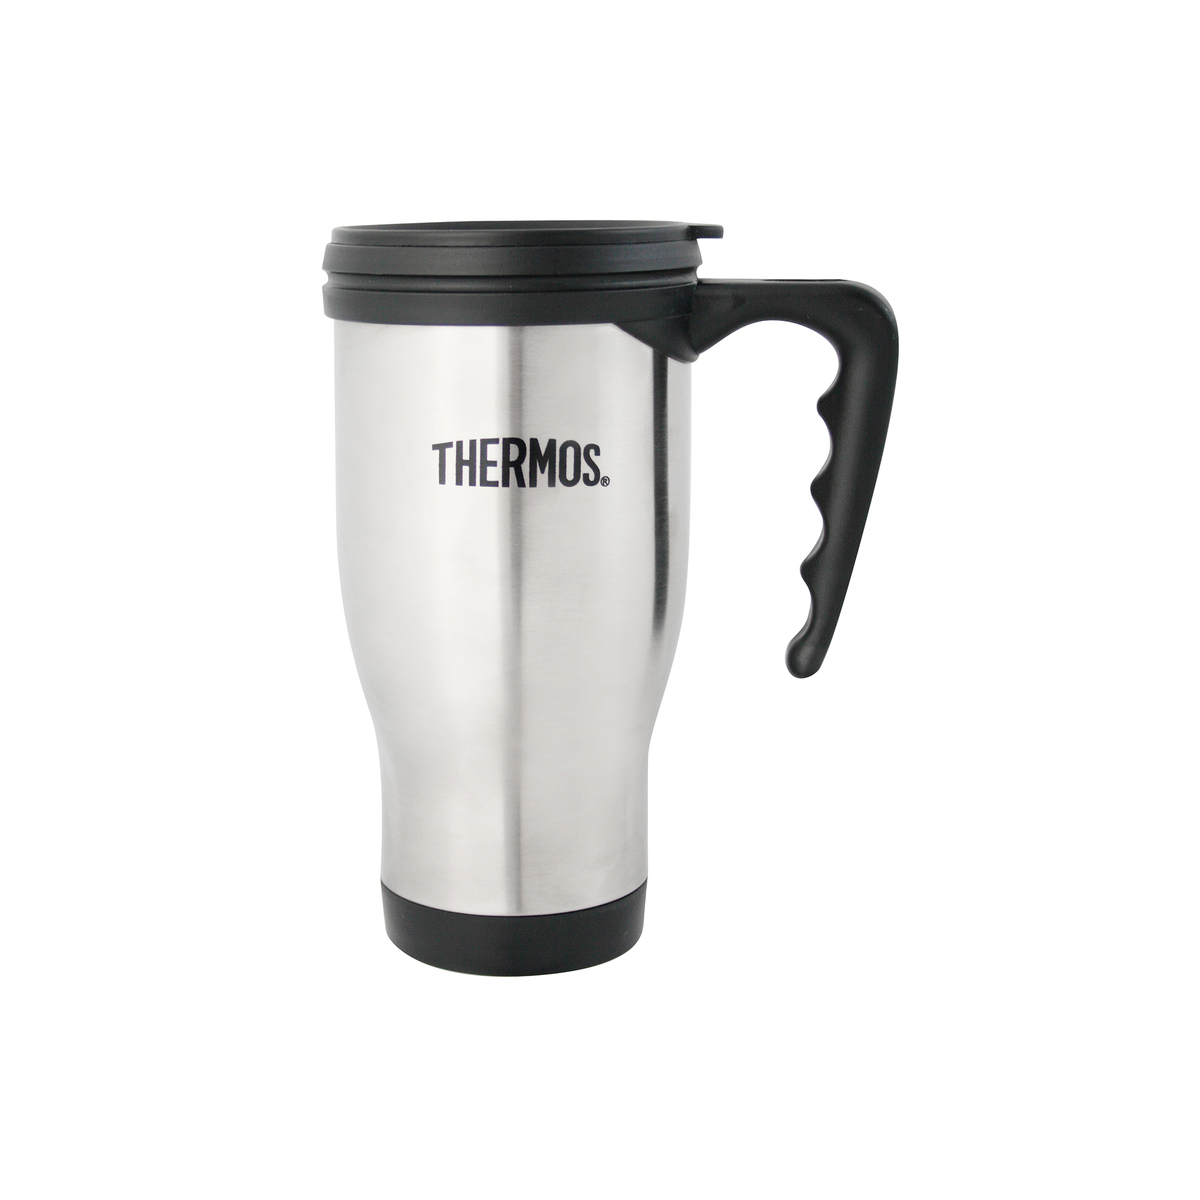 Thermos Travel Mug 2060 0.4 Litre